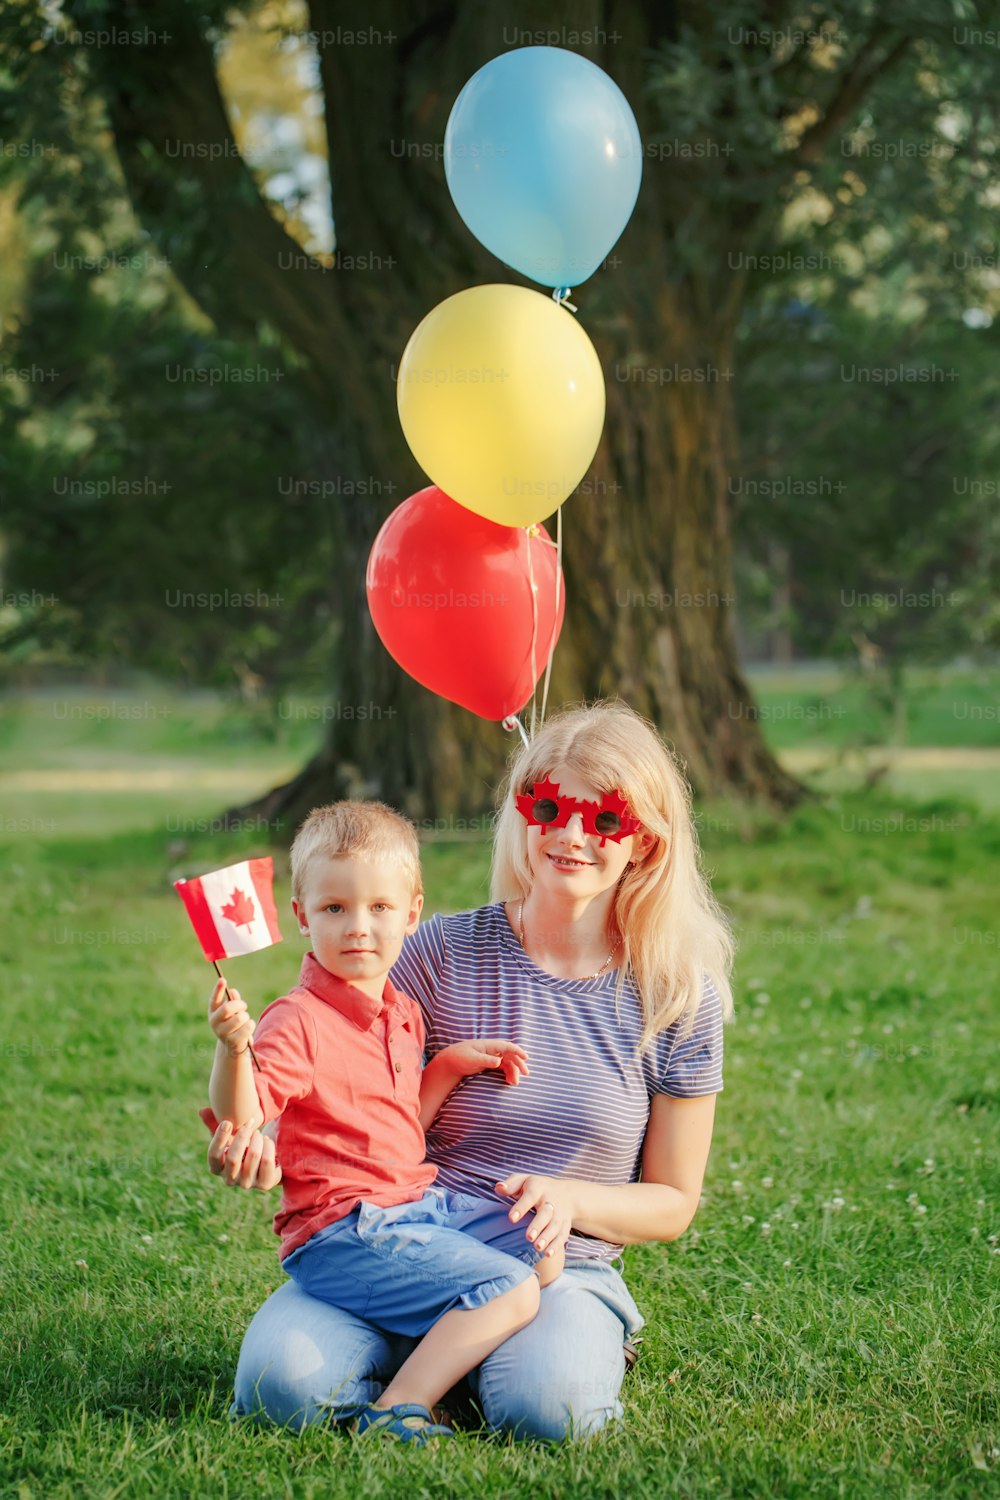 시민 가족 엄마는 7 월 1 일에 국가 캐나다의 날을 축하하는 아이 아이와 함께. 재미있는 단풍나무 잎과 심장 선글라스를 쓰고 있는 아기 유아 소년과 함께 있는 백인 어머니.